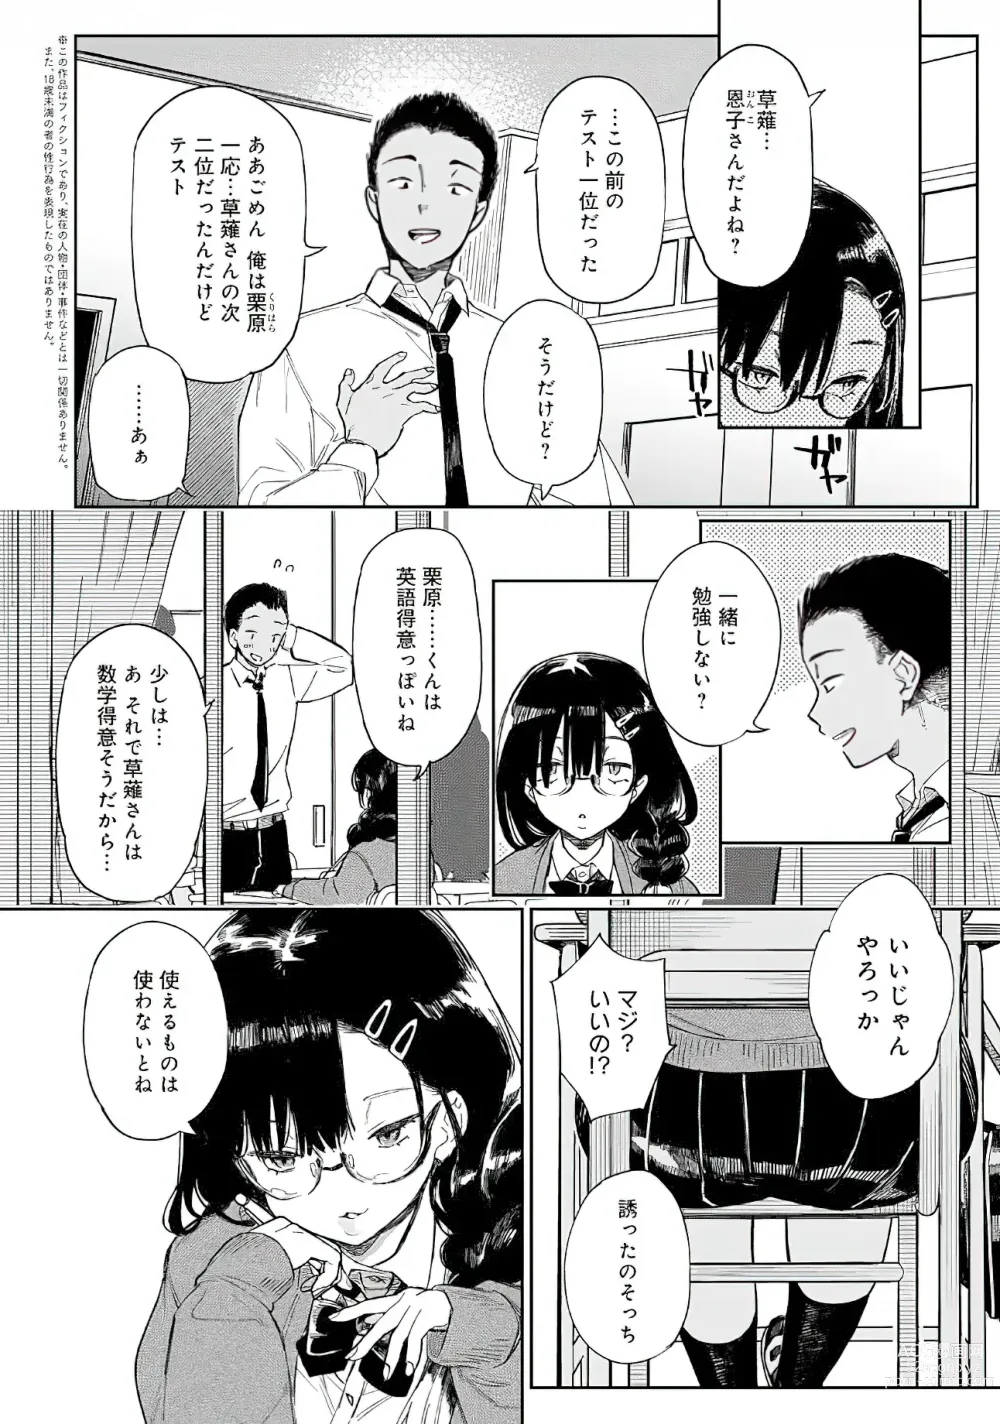 Page 2 of manga Inpei Bitch no Ikinukijutsu Ch. 1